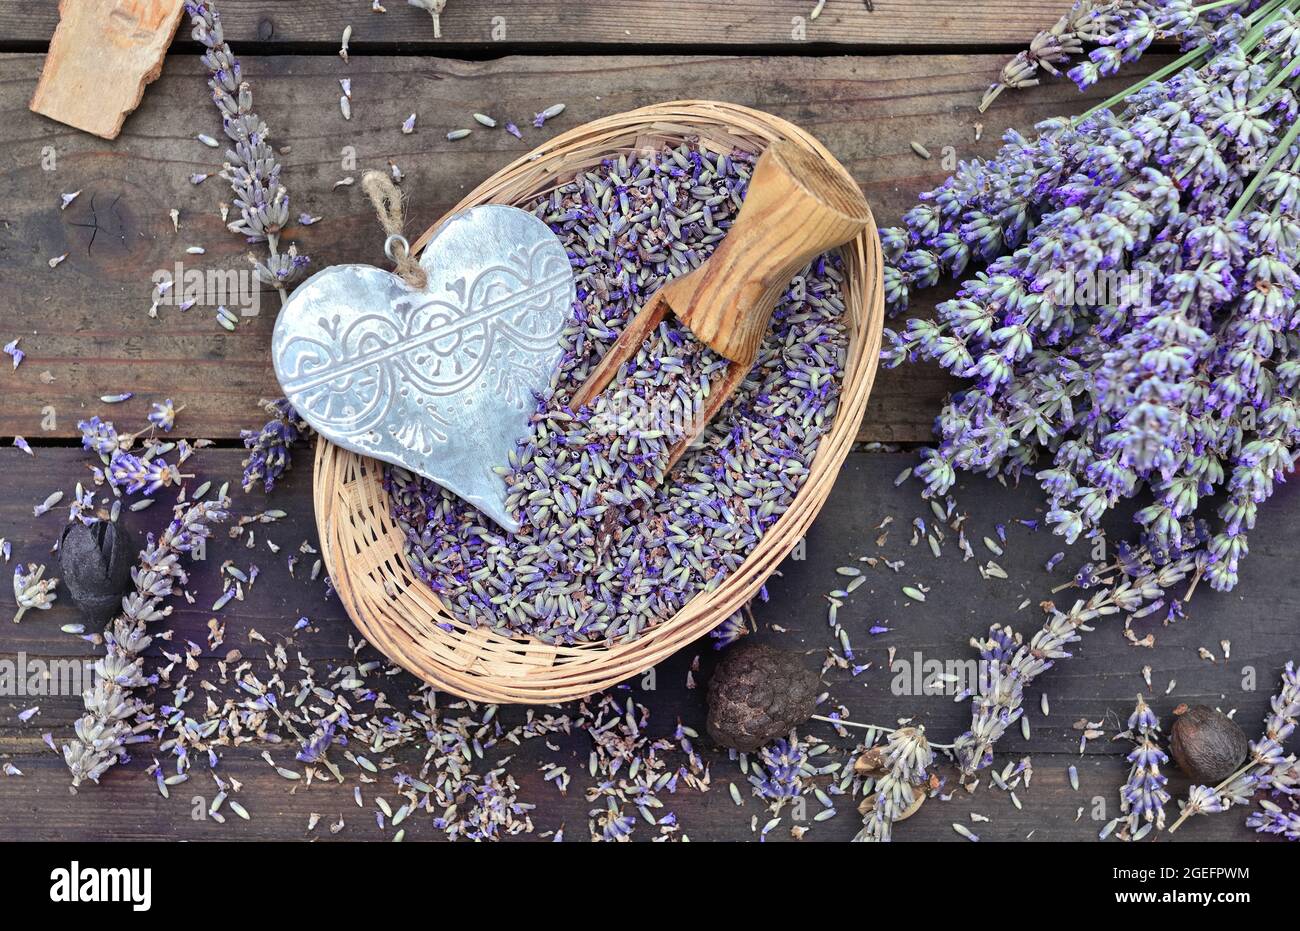 Dekoratives Herz aus Metall in einem kleinen Korb voller Lavendel auf einem Holztisch Stockfoto